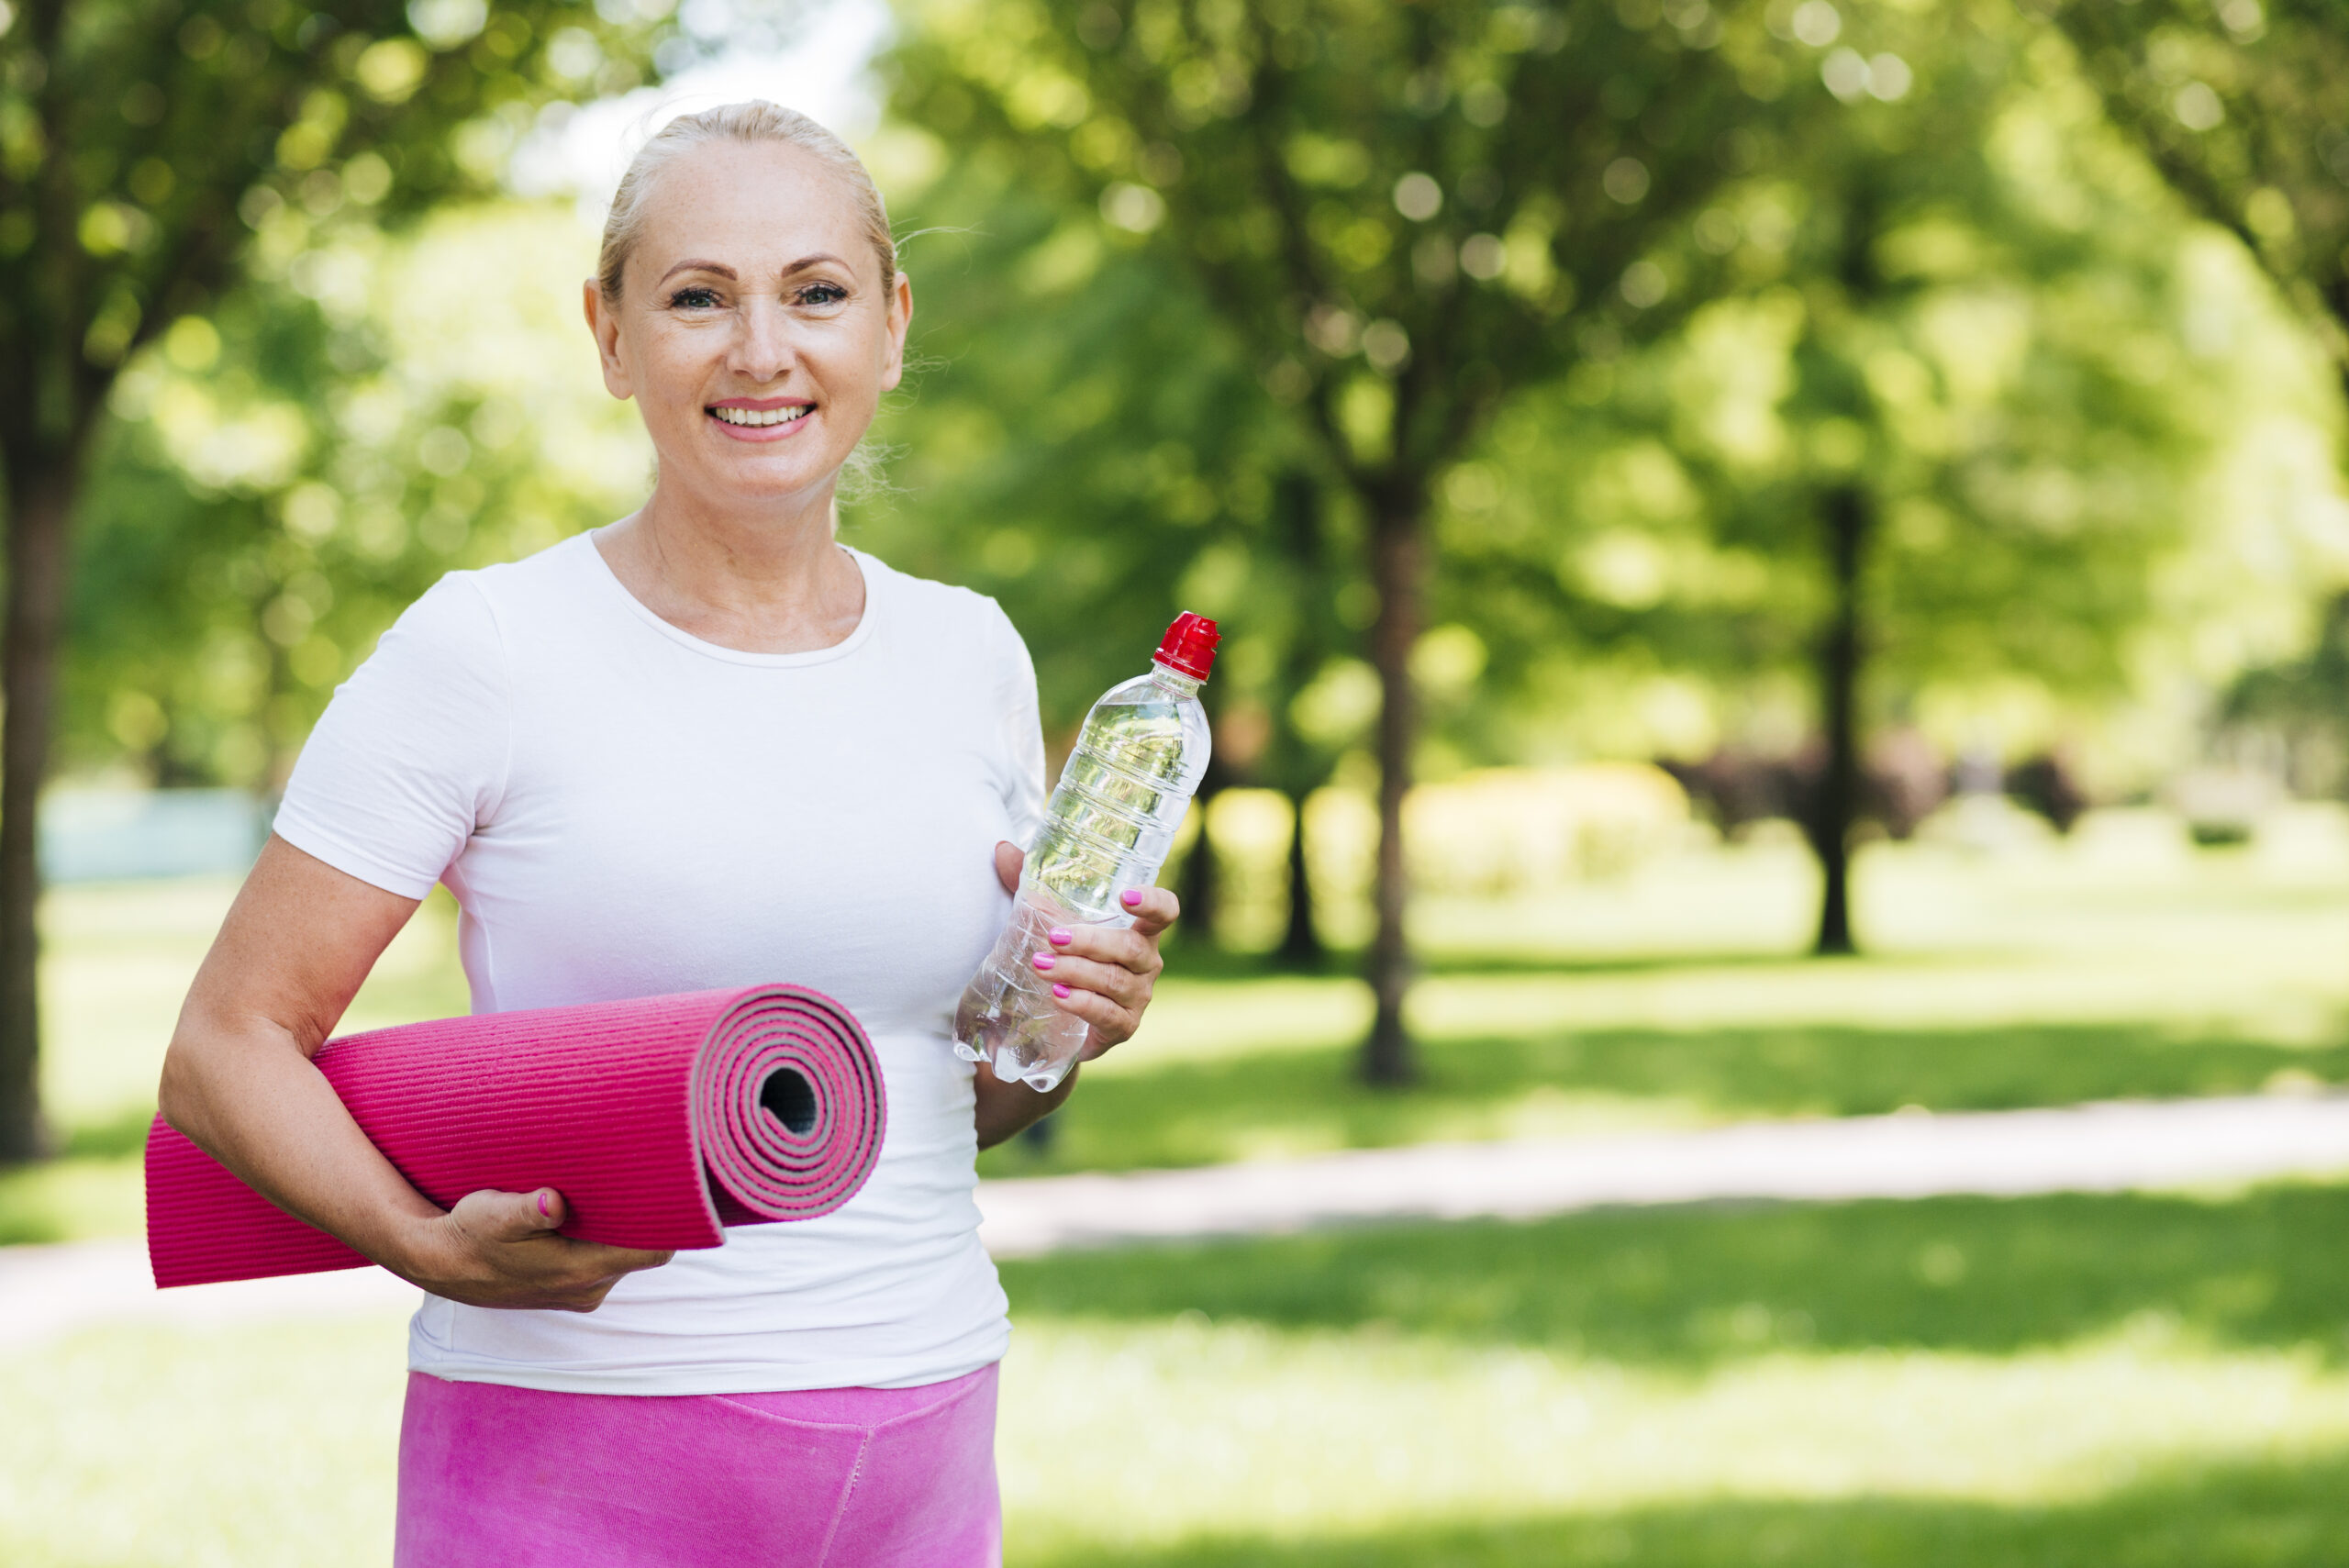 Vivere al meglio la menopausa con uno stile di vita attivo e sano